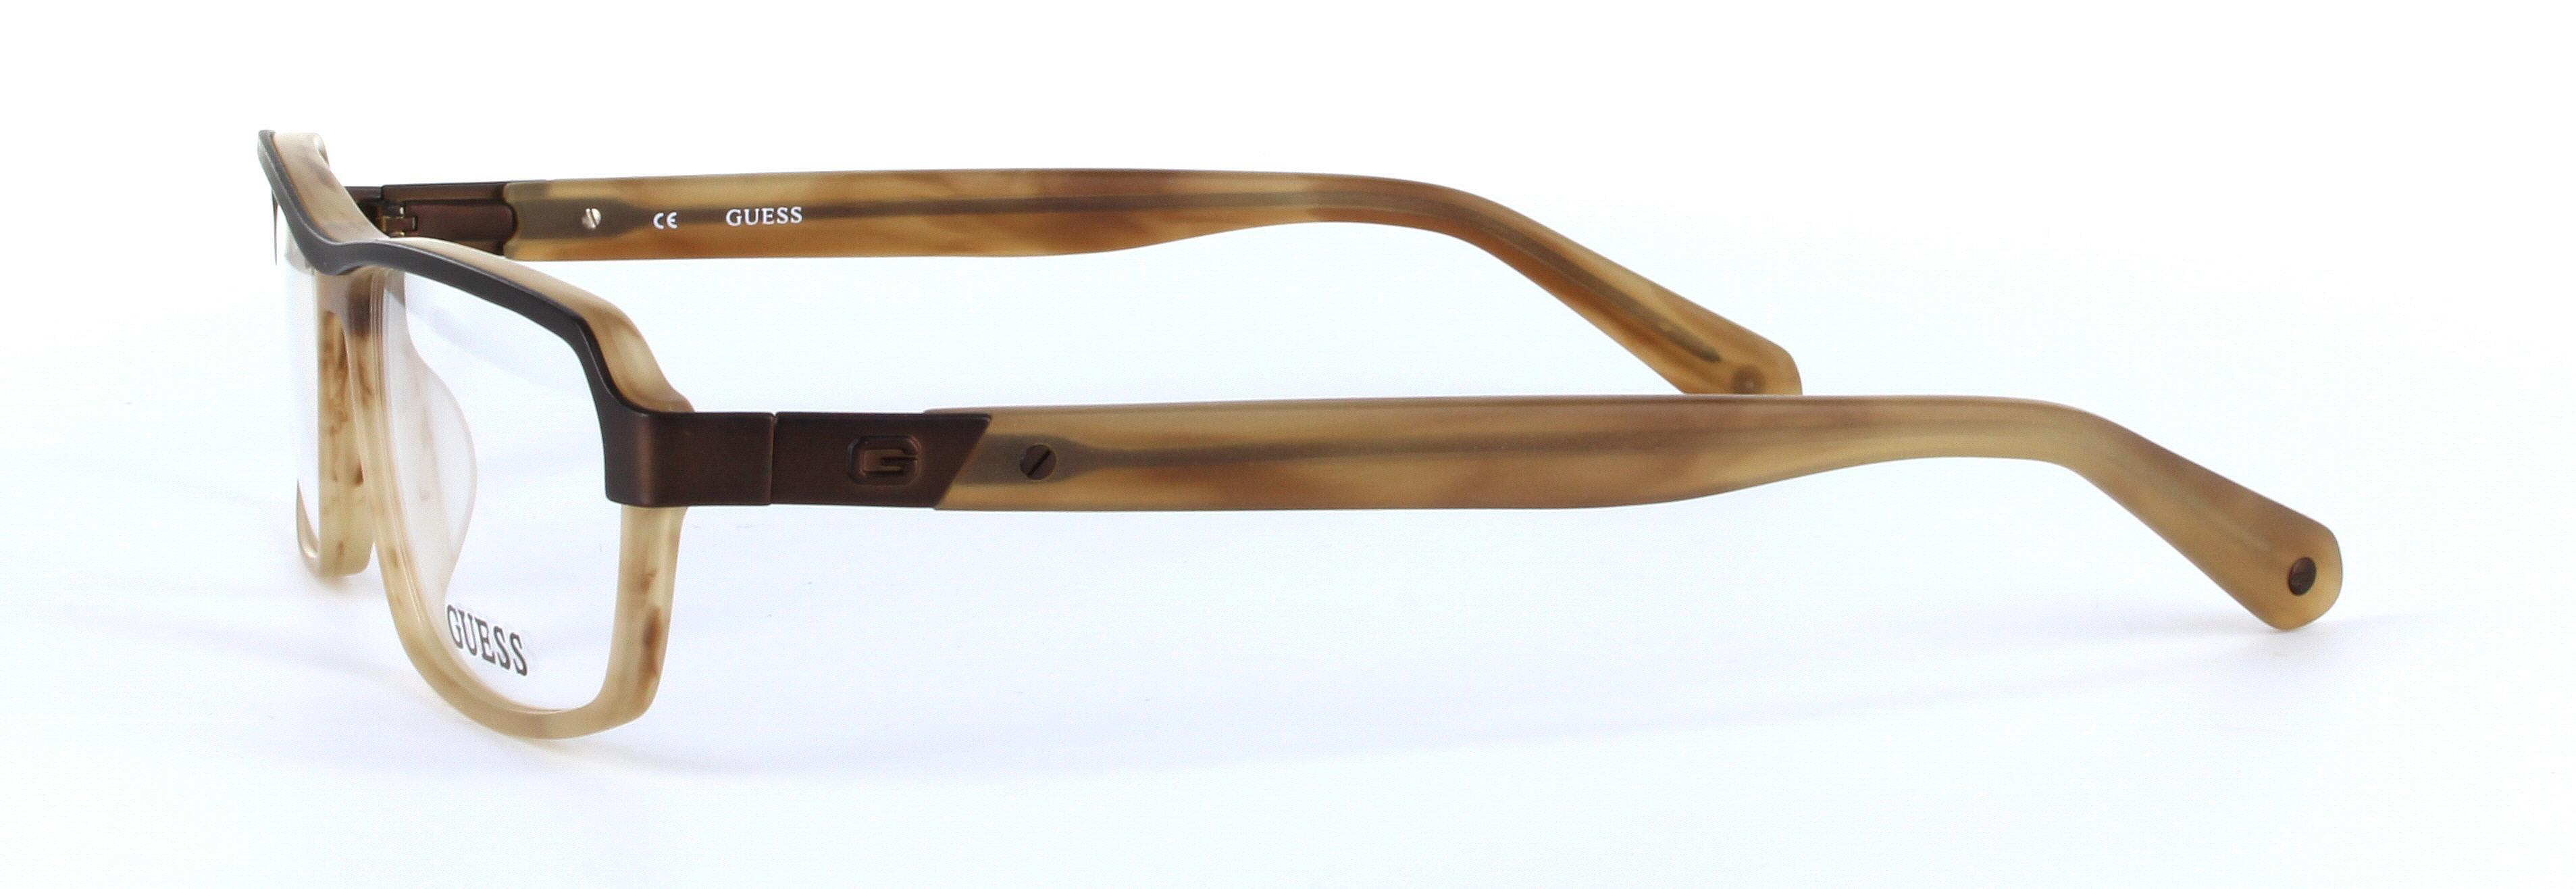 GUESS (GU1790-BRN) Brown Full Rim Rectangular Acetate Glasses - Image View 2